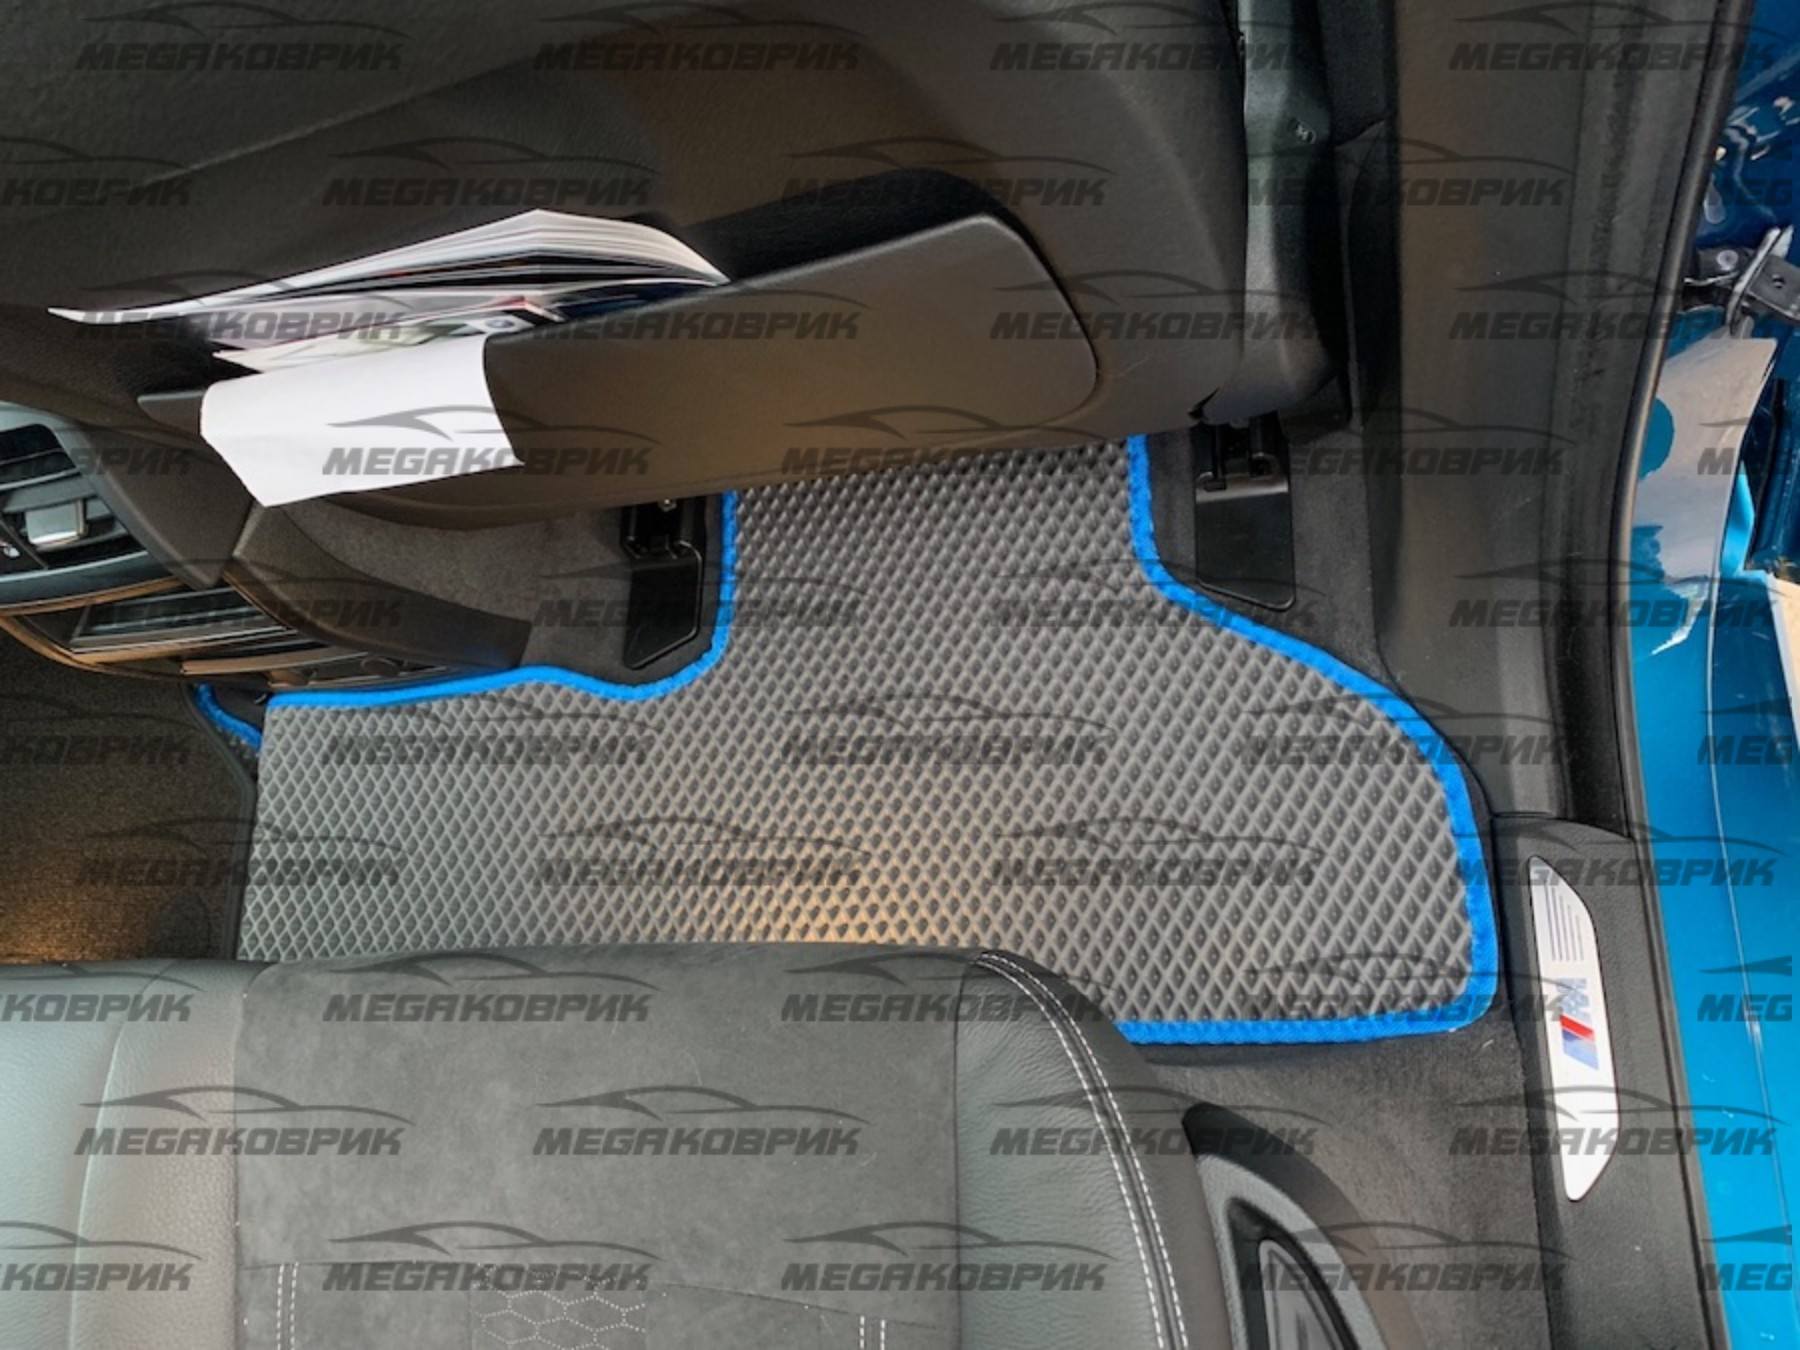  Коврики для Коврик Honda Stepwgn IV 2012 - 2015 с подстаканником